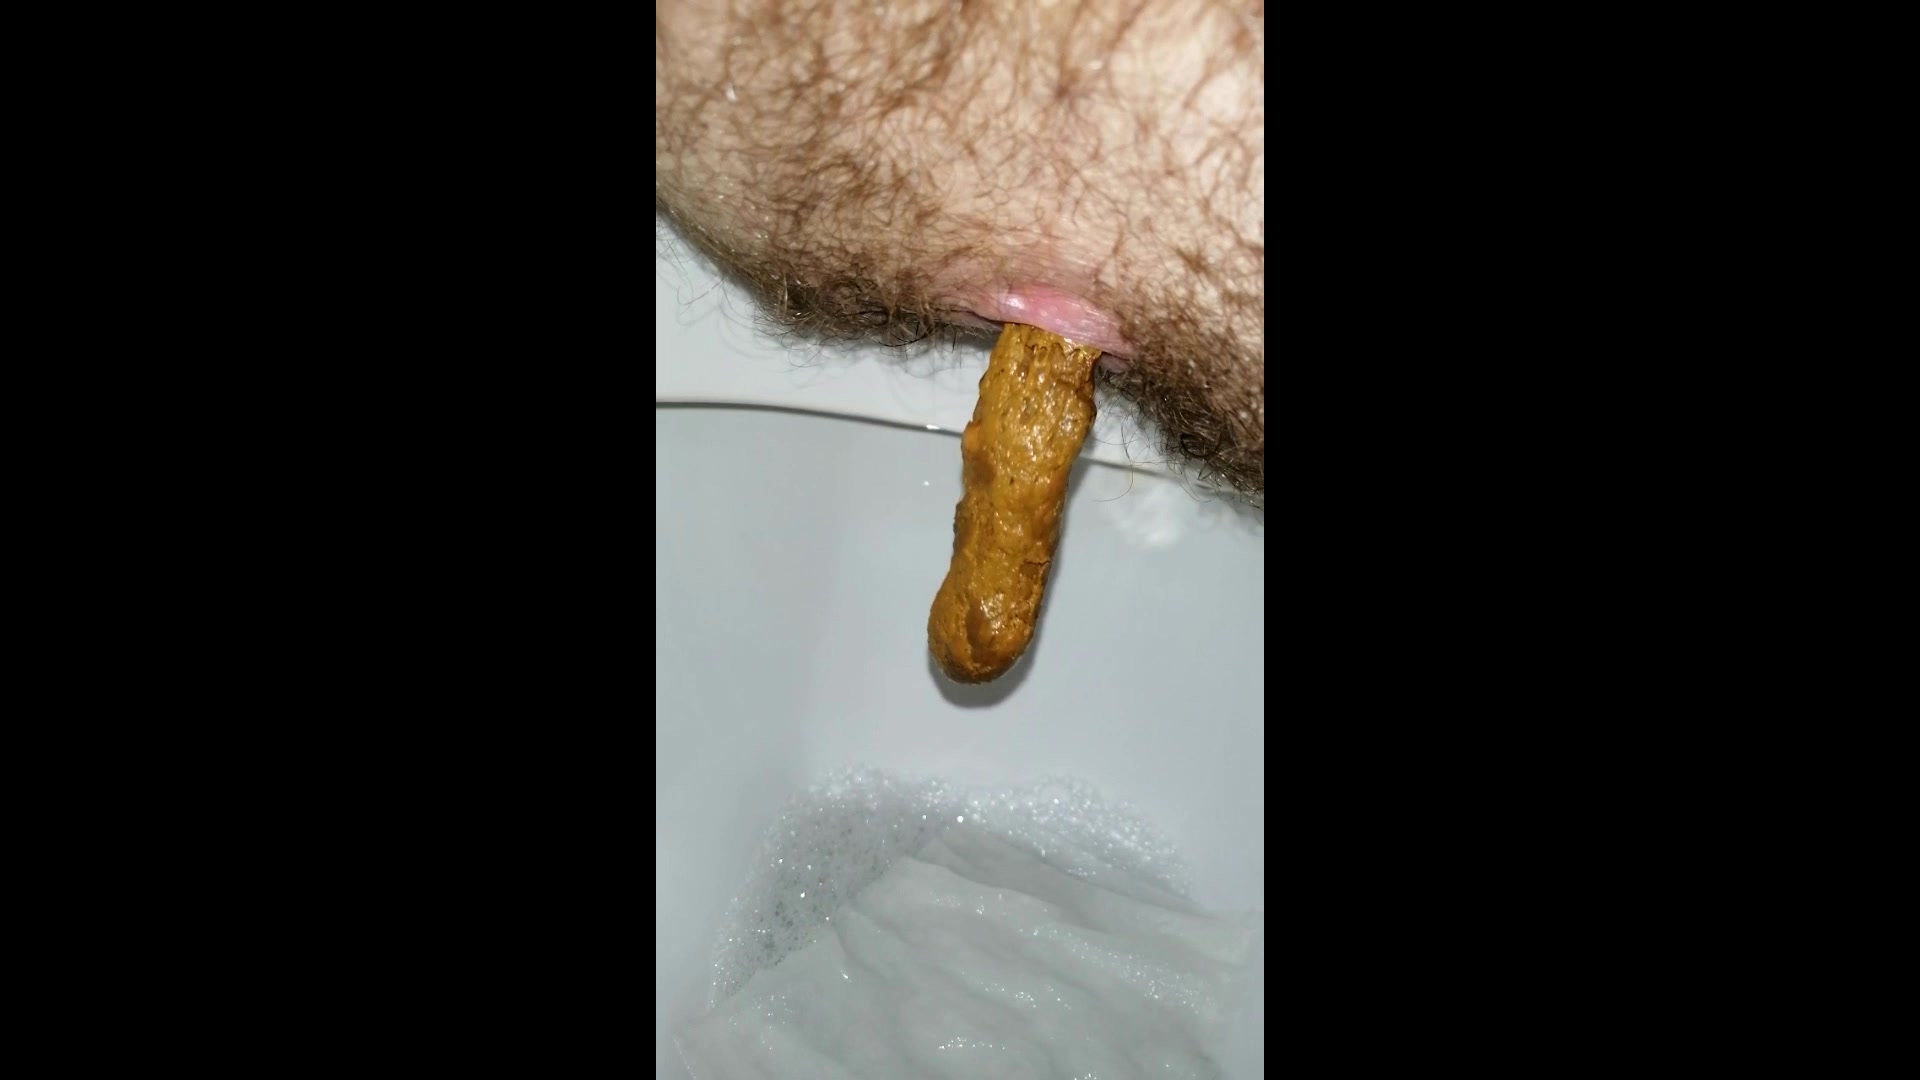 Pooping in toilet + poop in hand